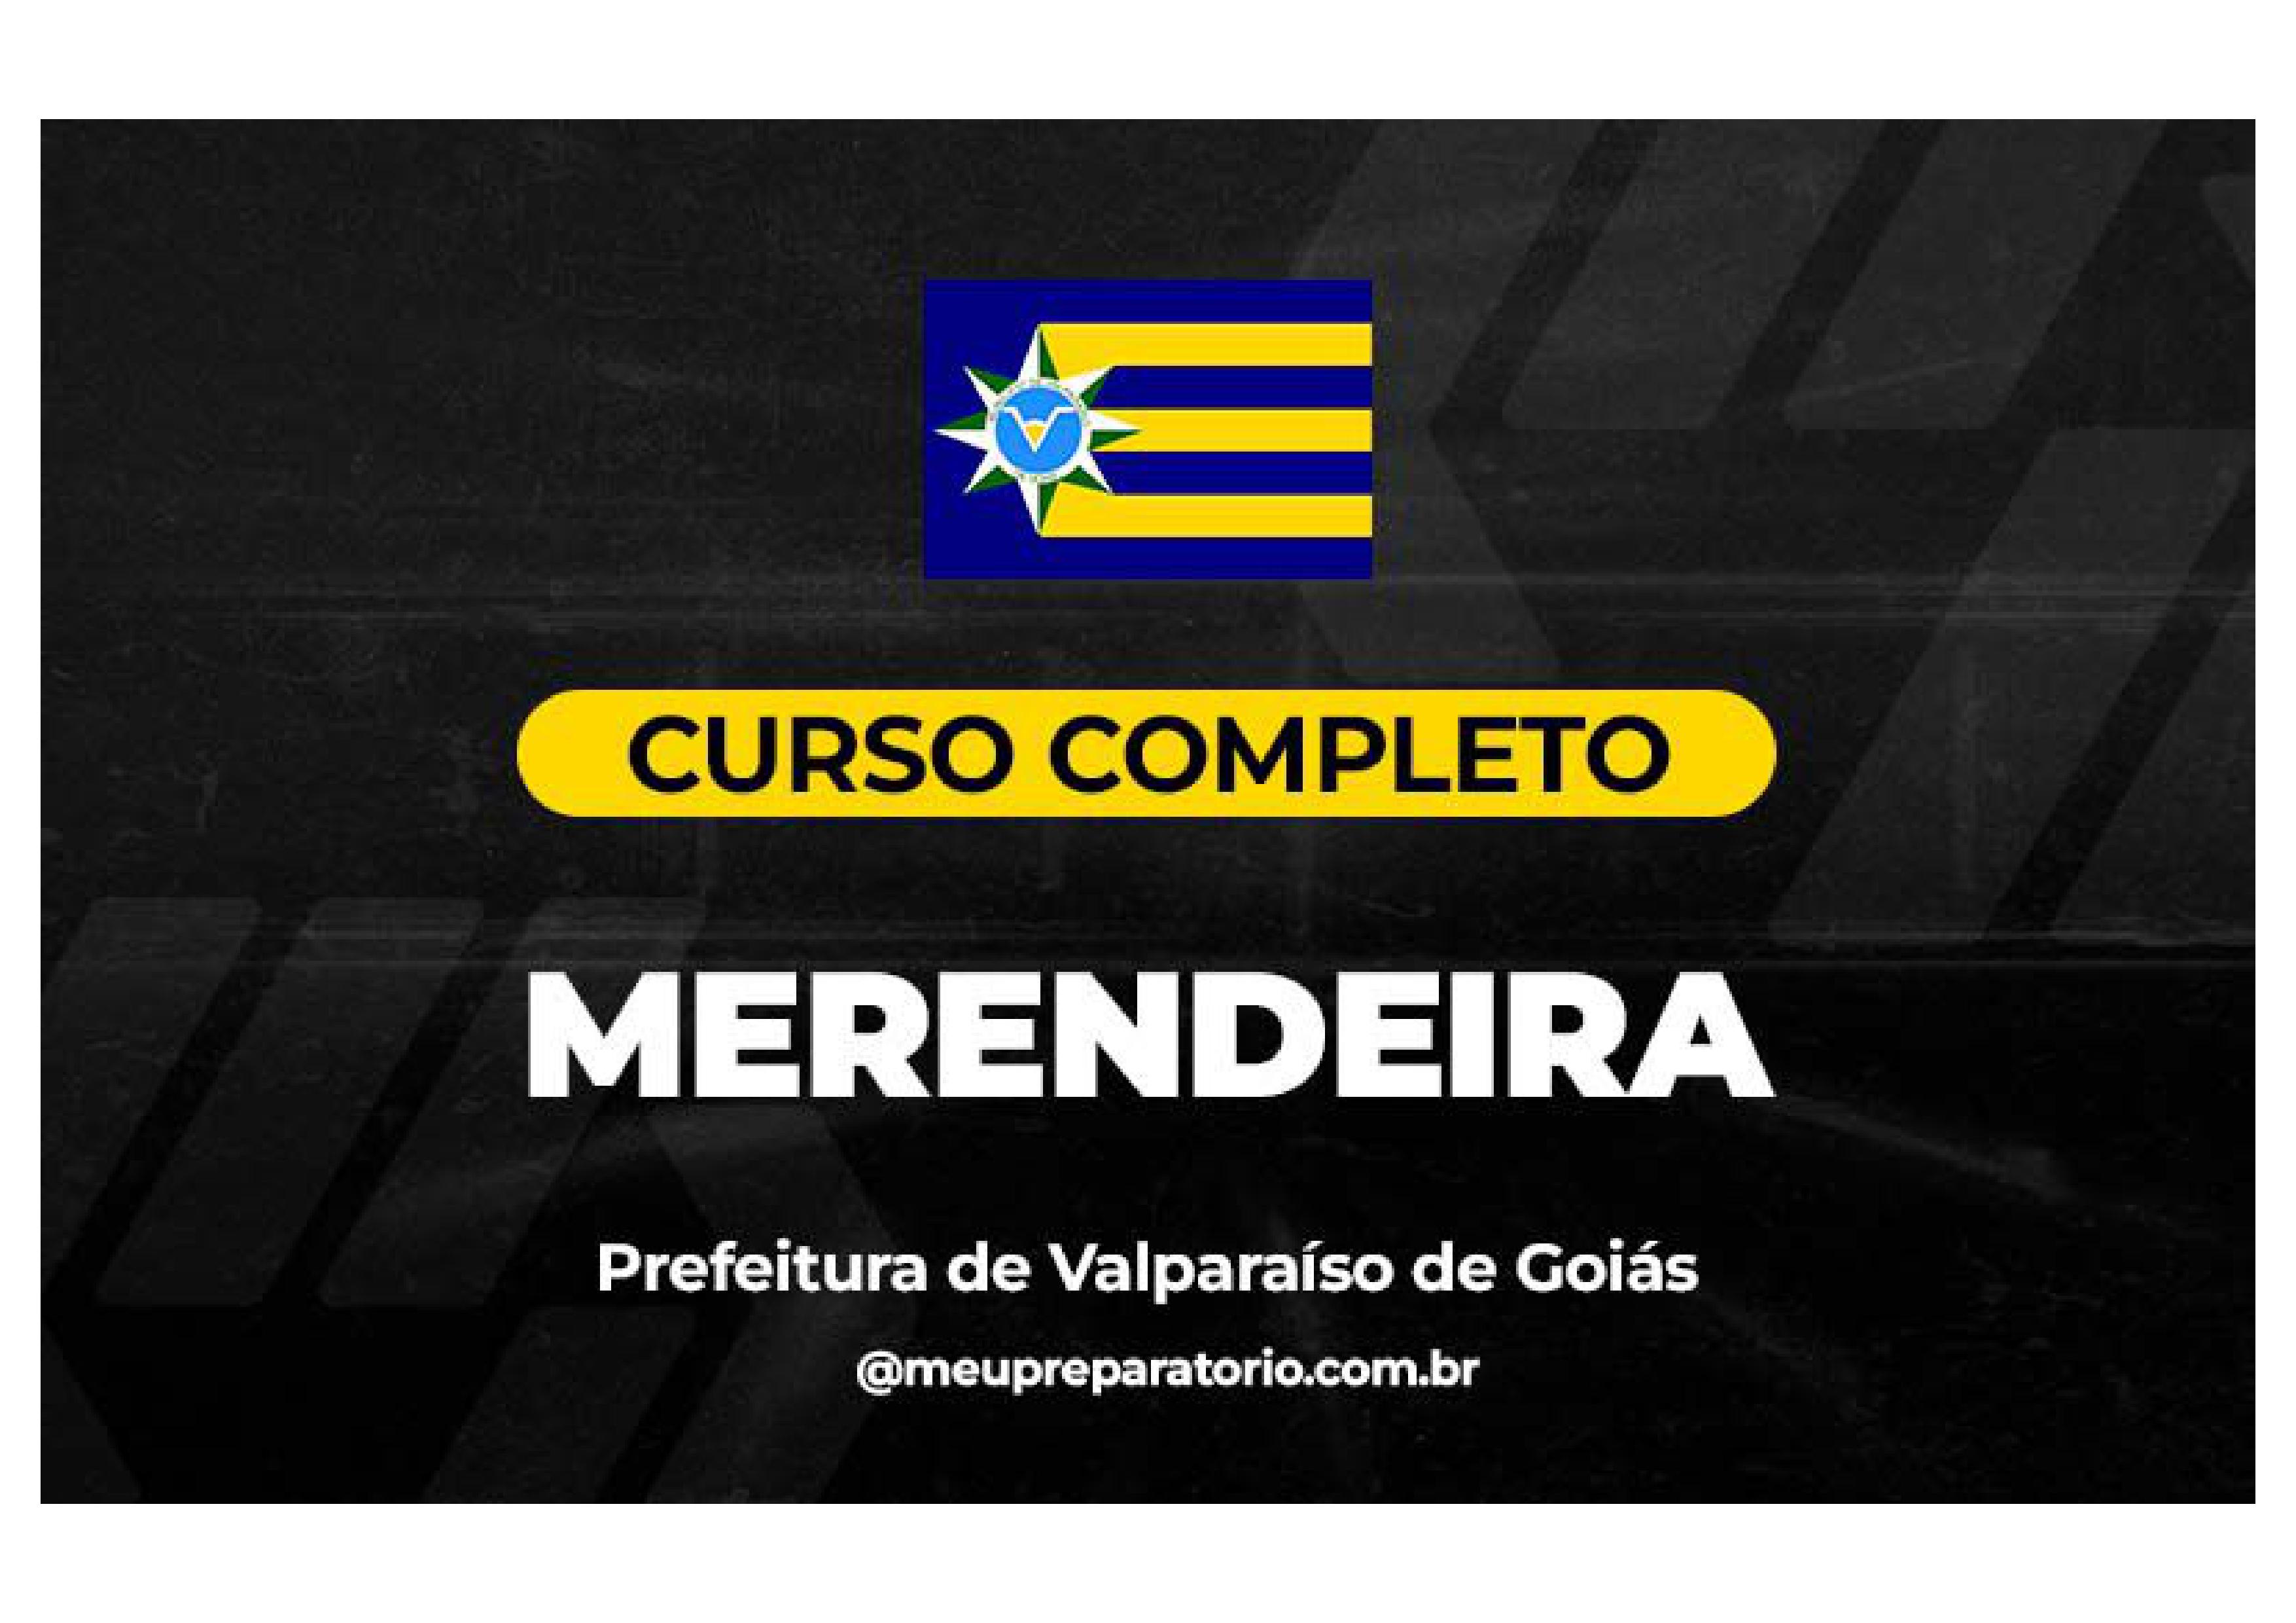 Merendeira - Valparaíso (GO)